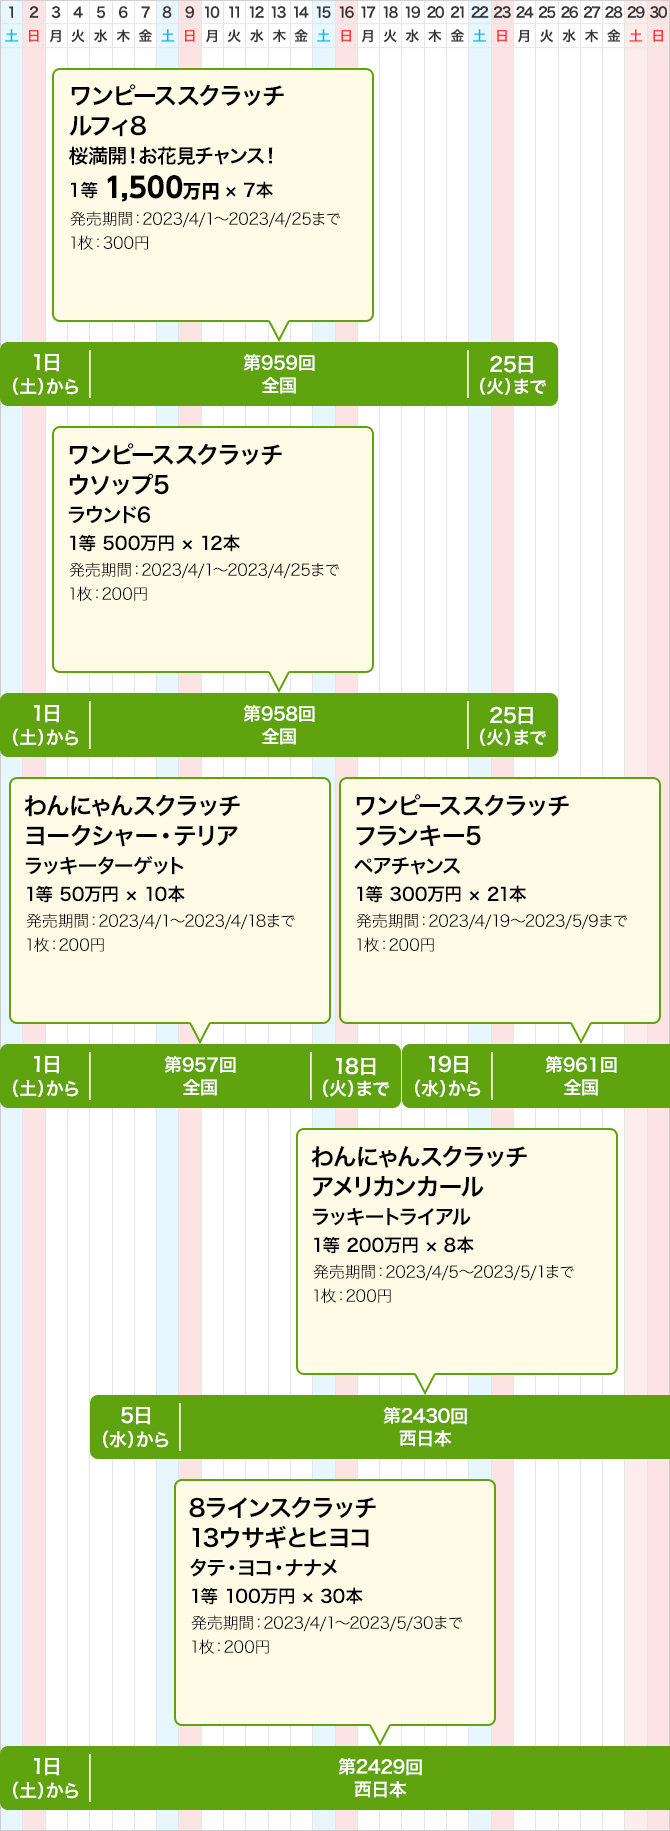 西日本のスクラッチくじ発売スケジュール(4月)